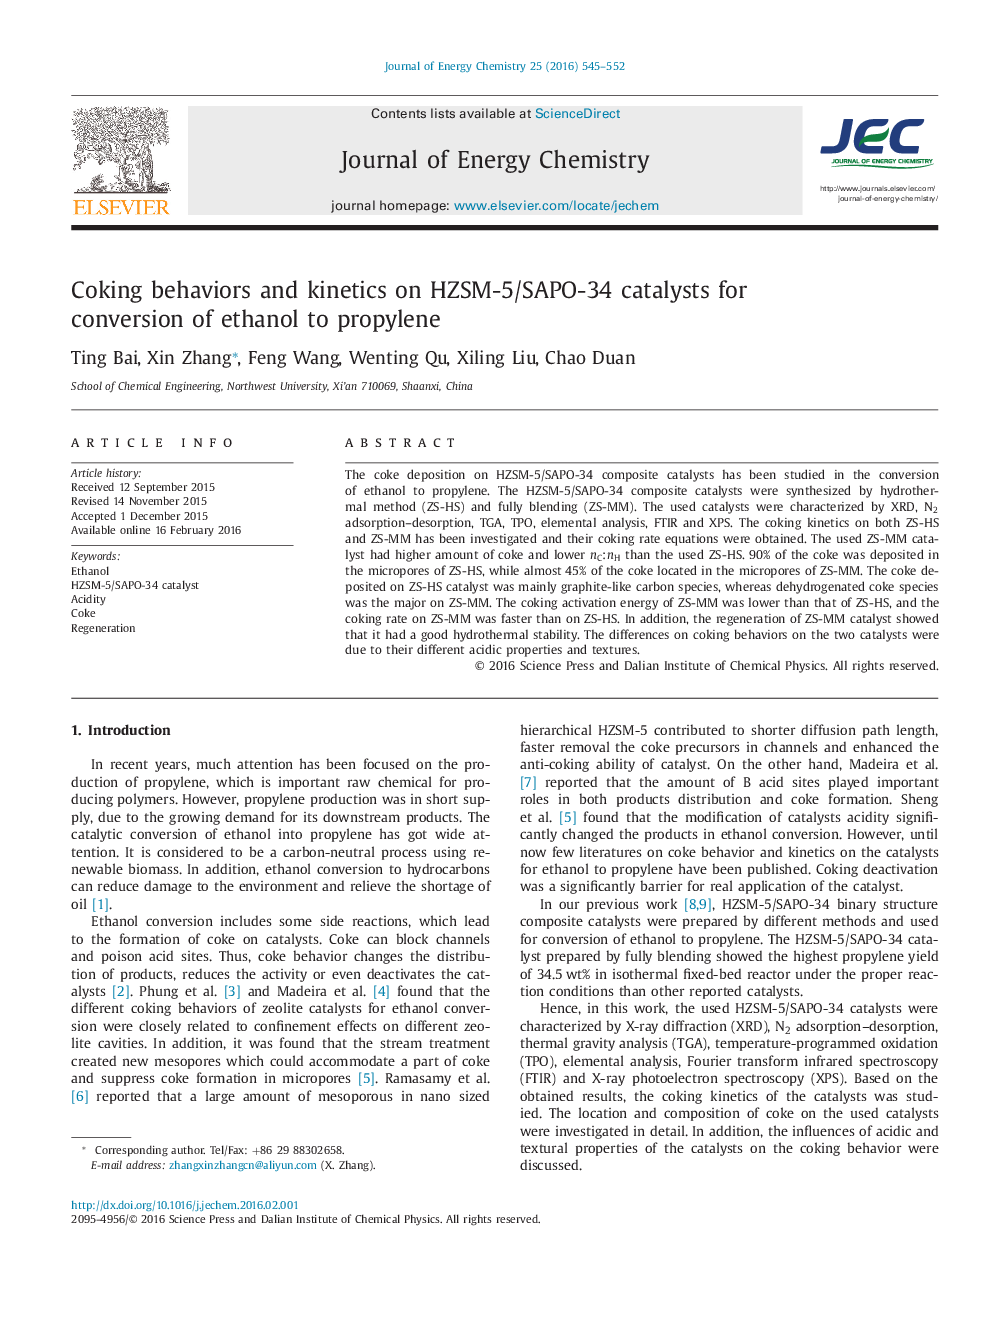 رفتار و کینتیک کک سازی در کاتالیزورهای HZSM-5/SAPO-34 برای تبدیل اتانول به پروپیلن